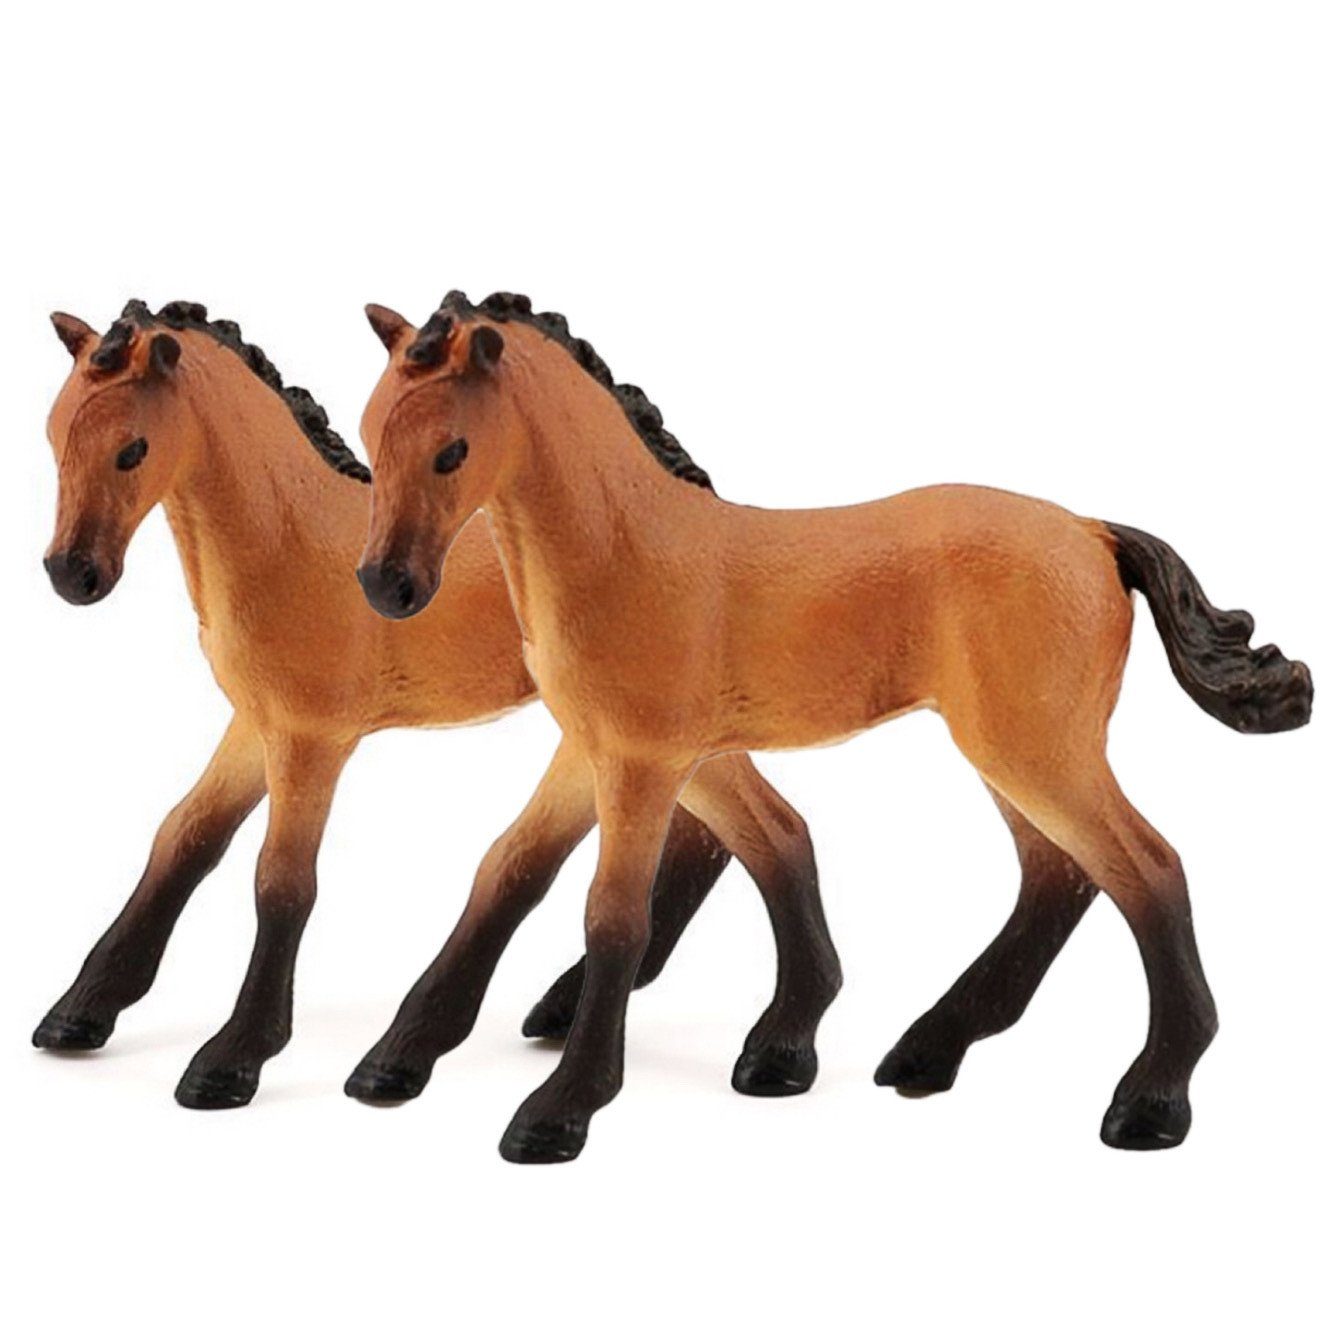 Simulation Tierfigur 2 SCRTD Figuren Stück Tierfiguren, Pferd Ornamente,Kinderspielzeug, Kinder Tiermodell,Kinderspielzeug,für